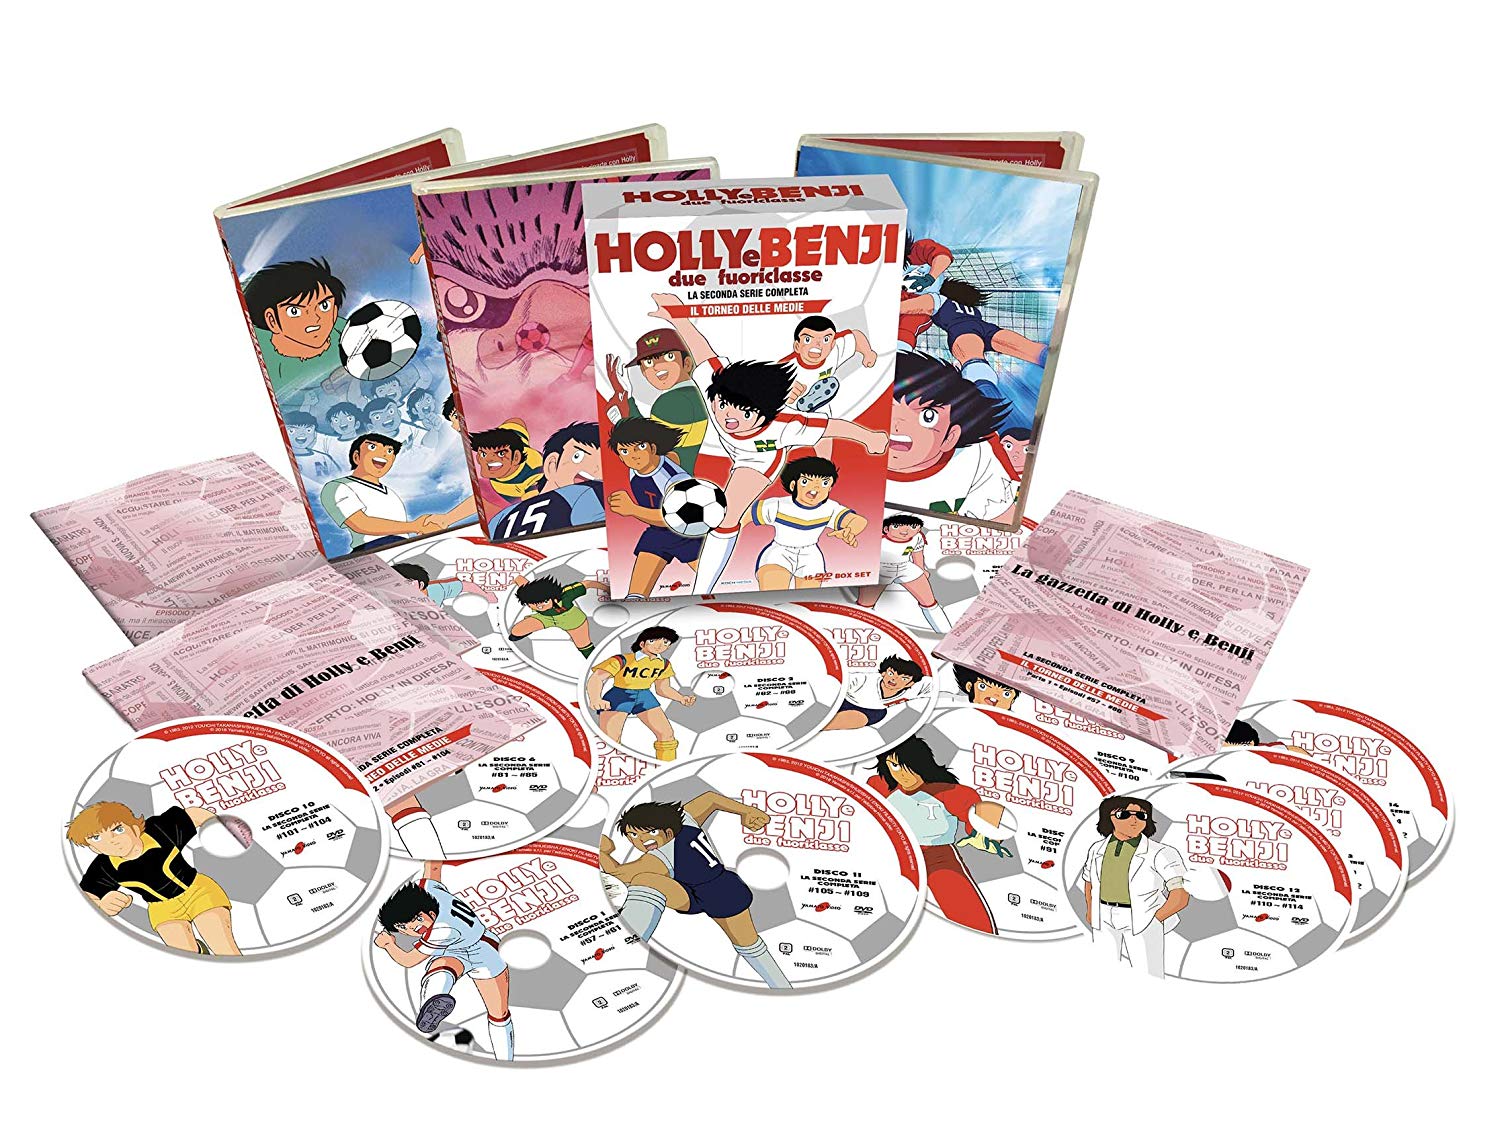 Holly e Benji due fuoriclasse toneo delle medie serie 2 dvd amazon acquista online anime cartoni animati calcio